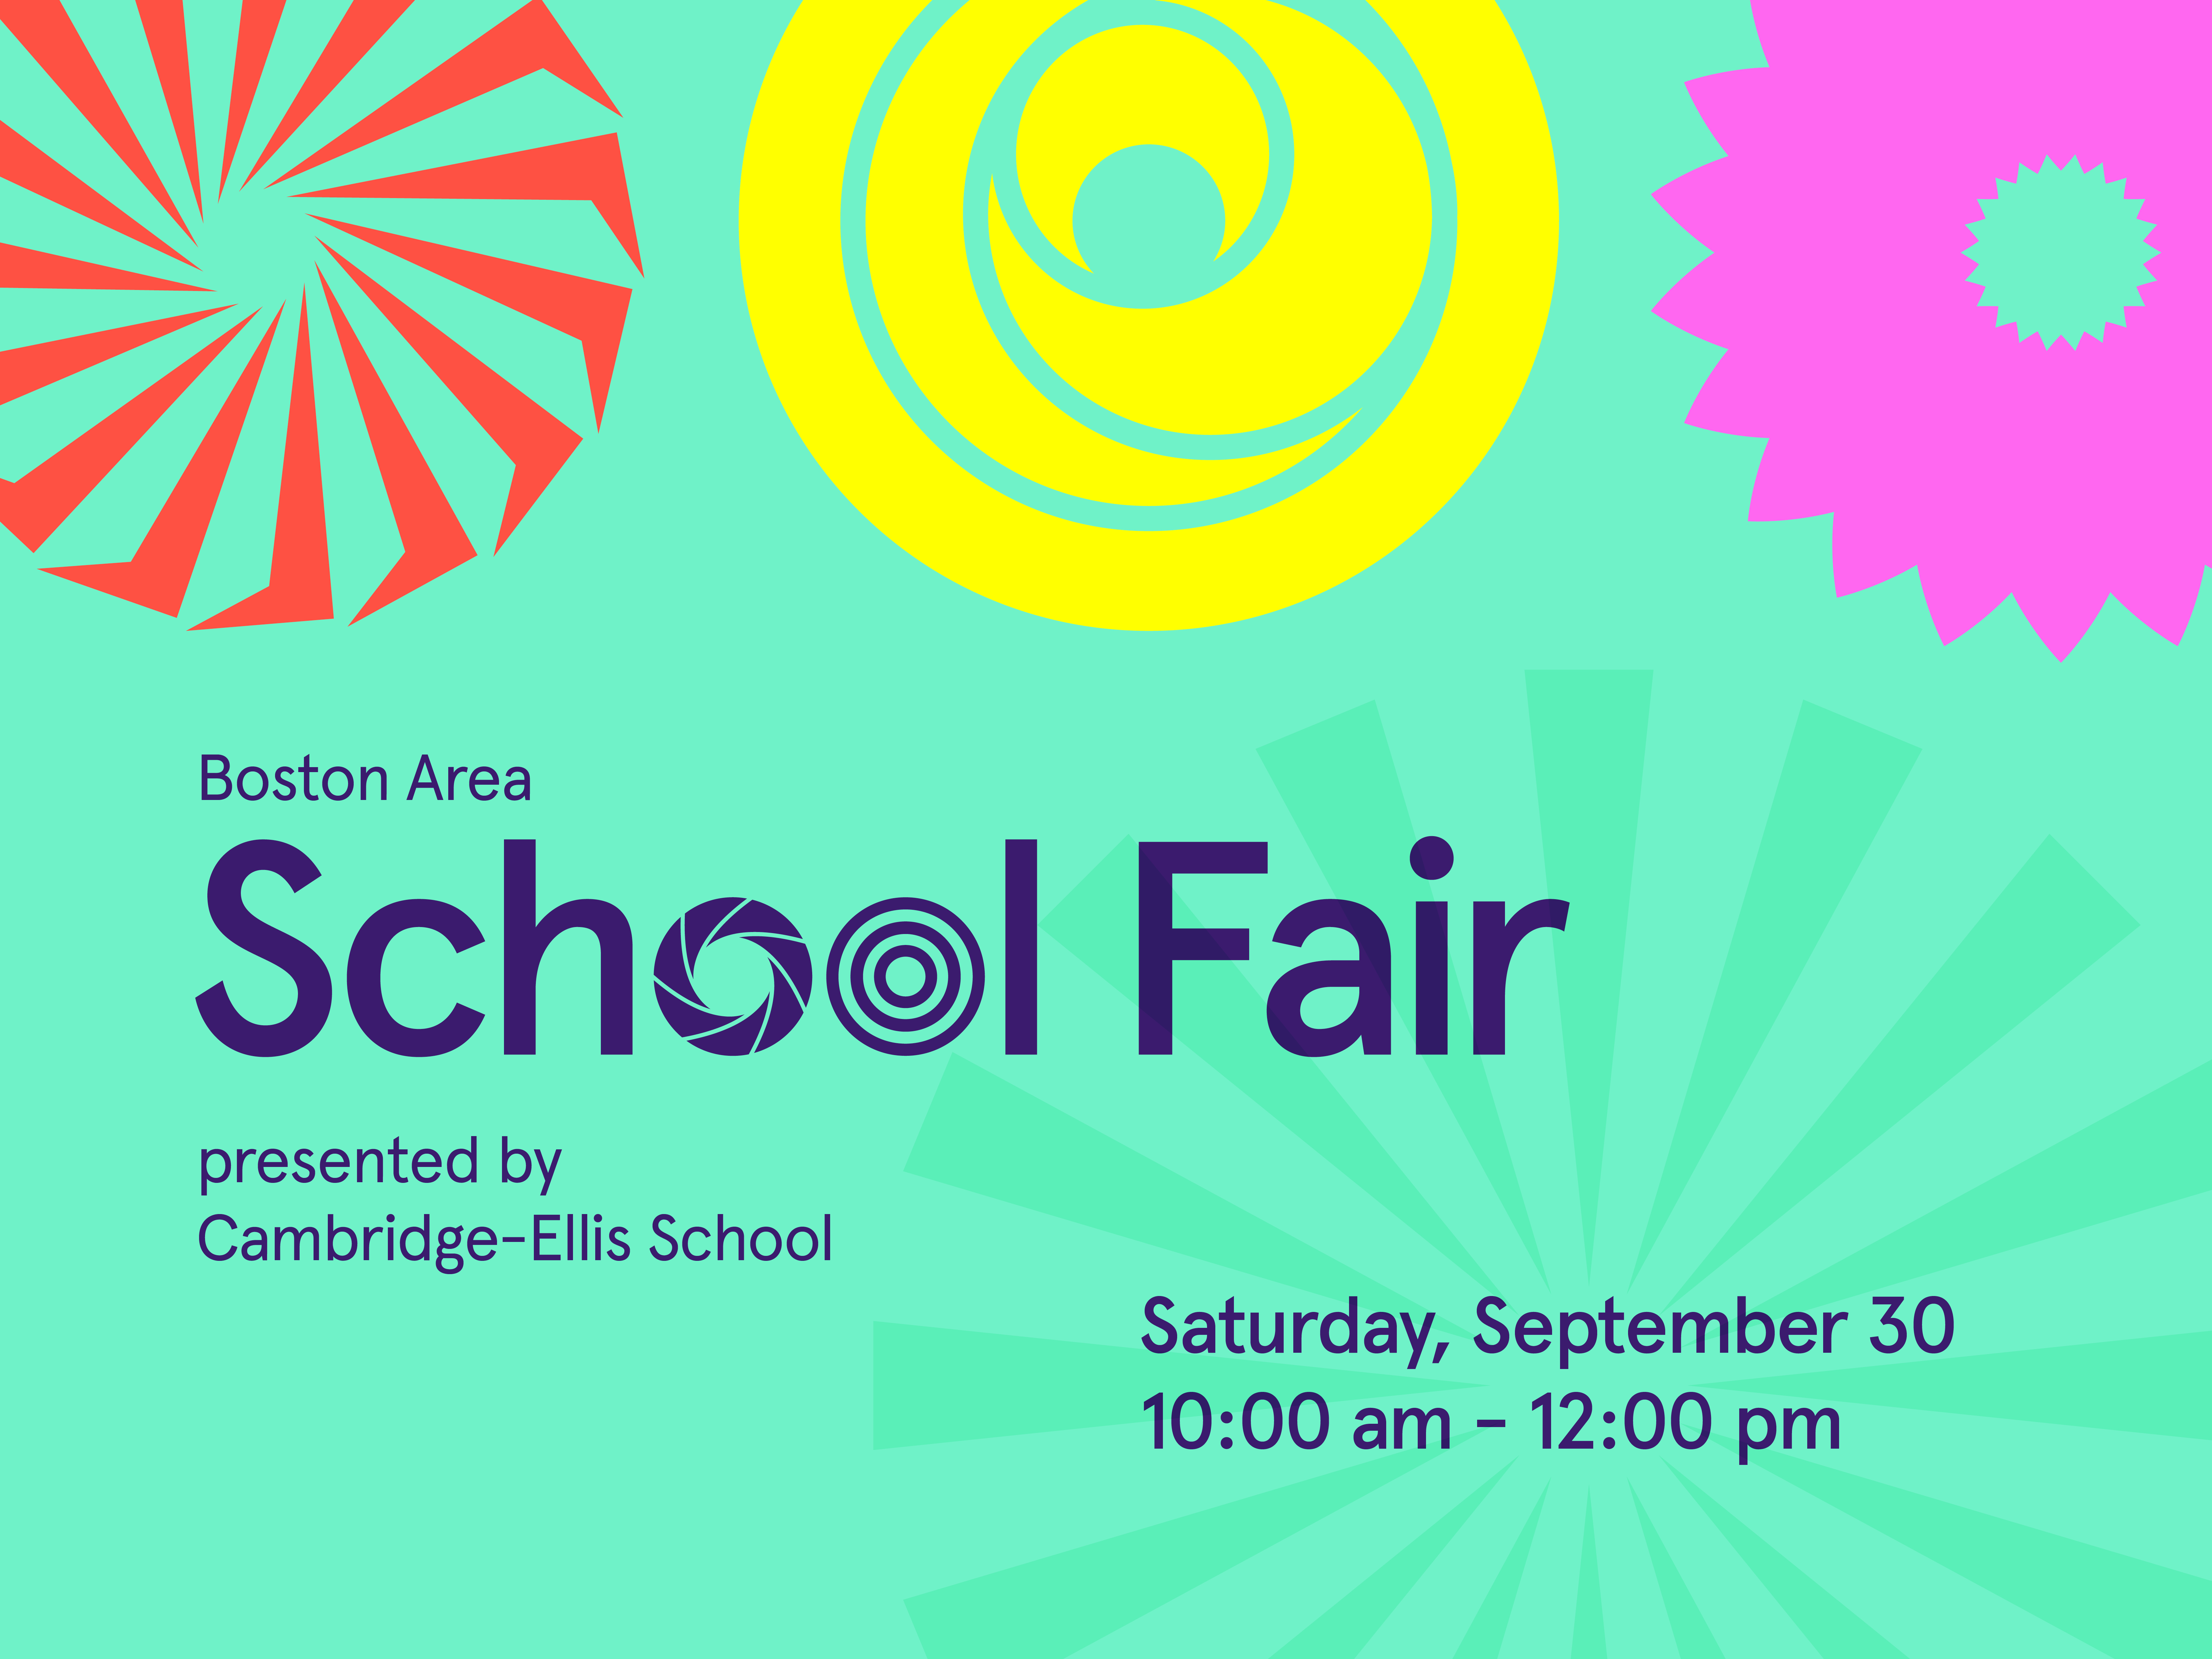 Boston Area School Fair presented by Cambridge-Ellis School